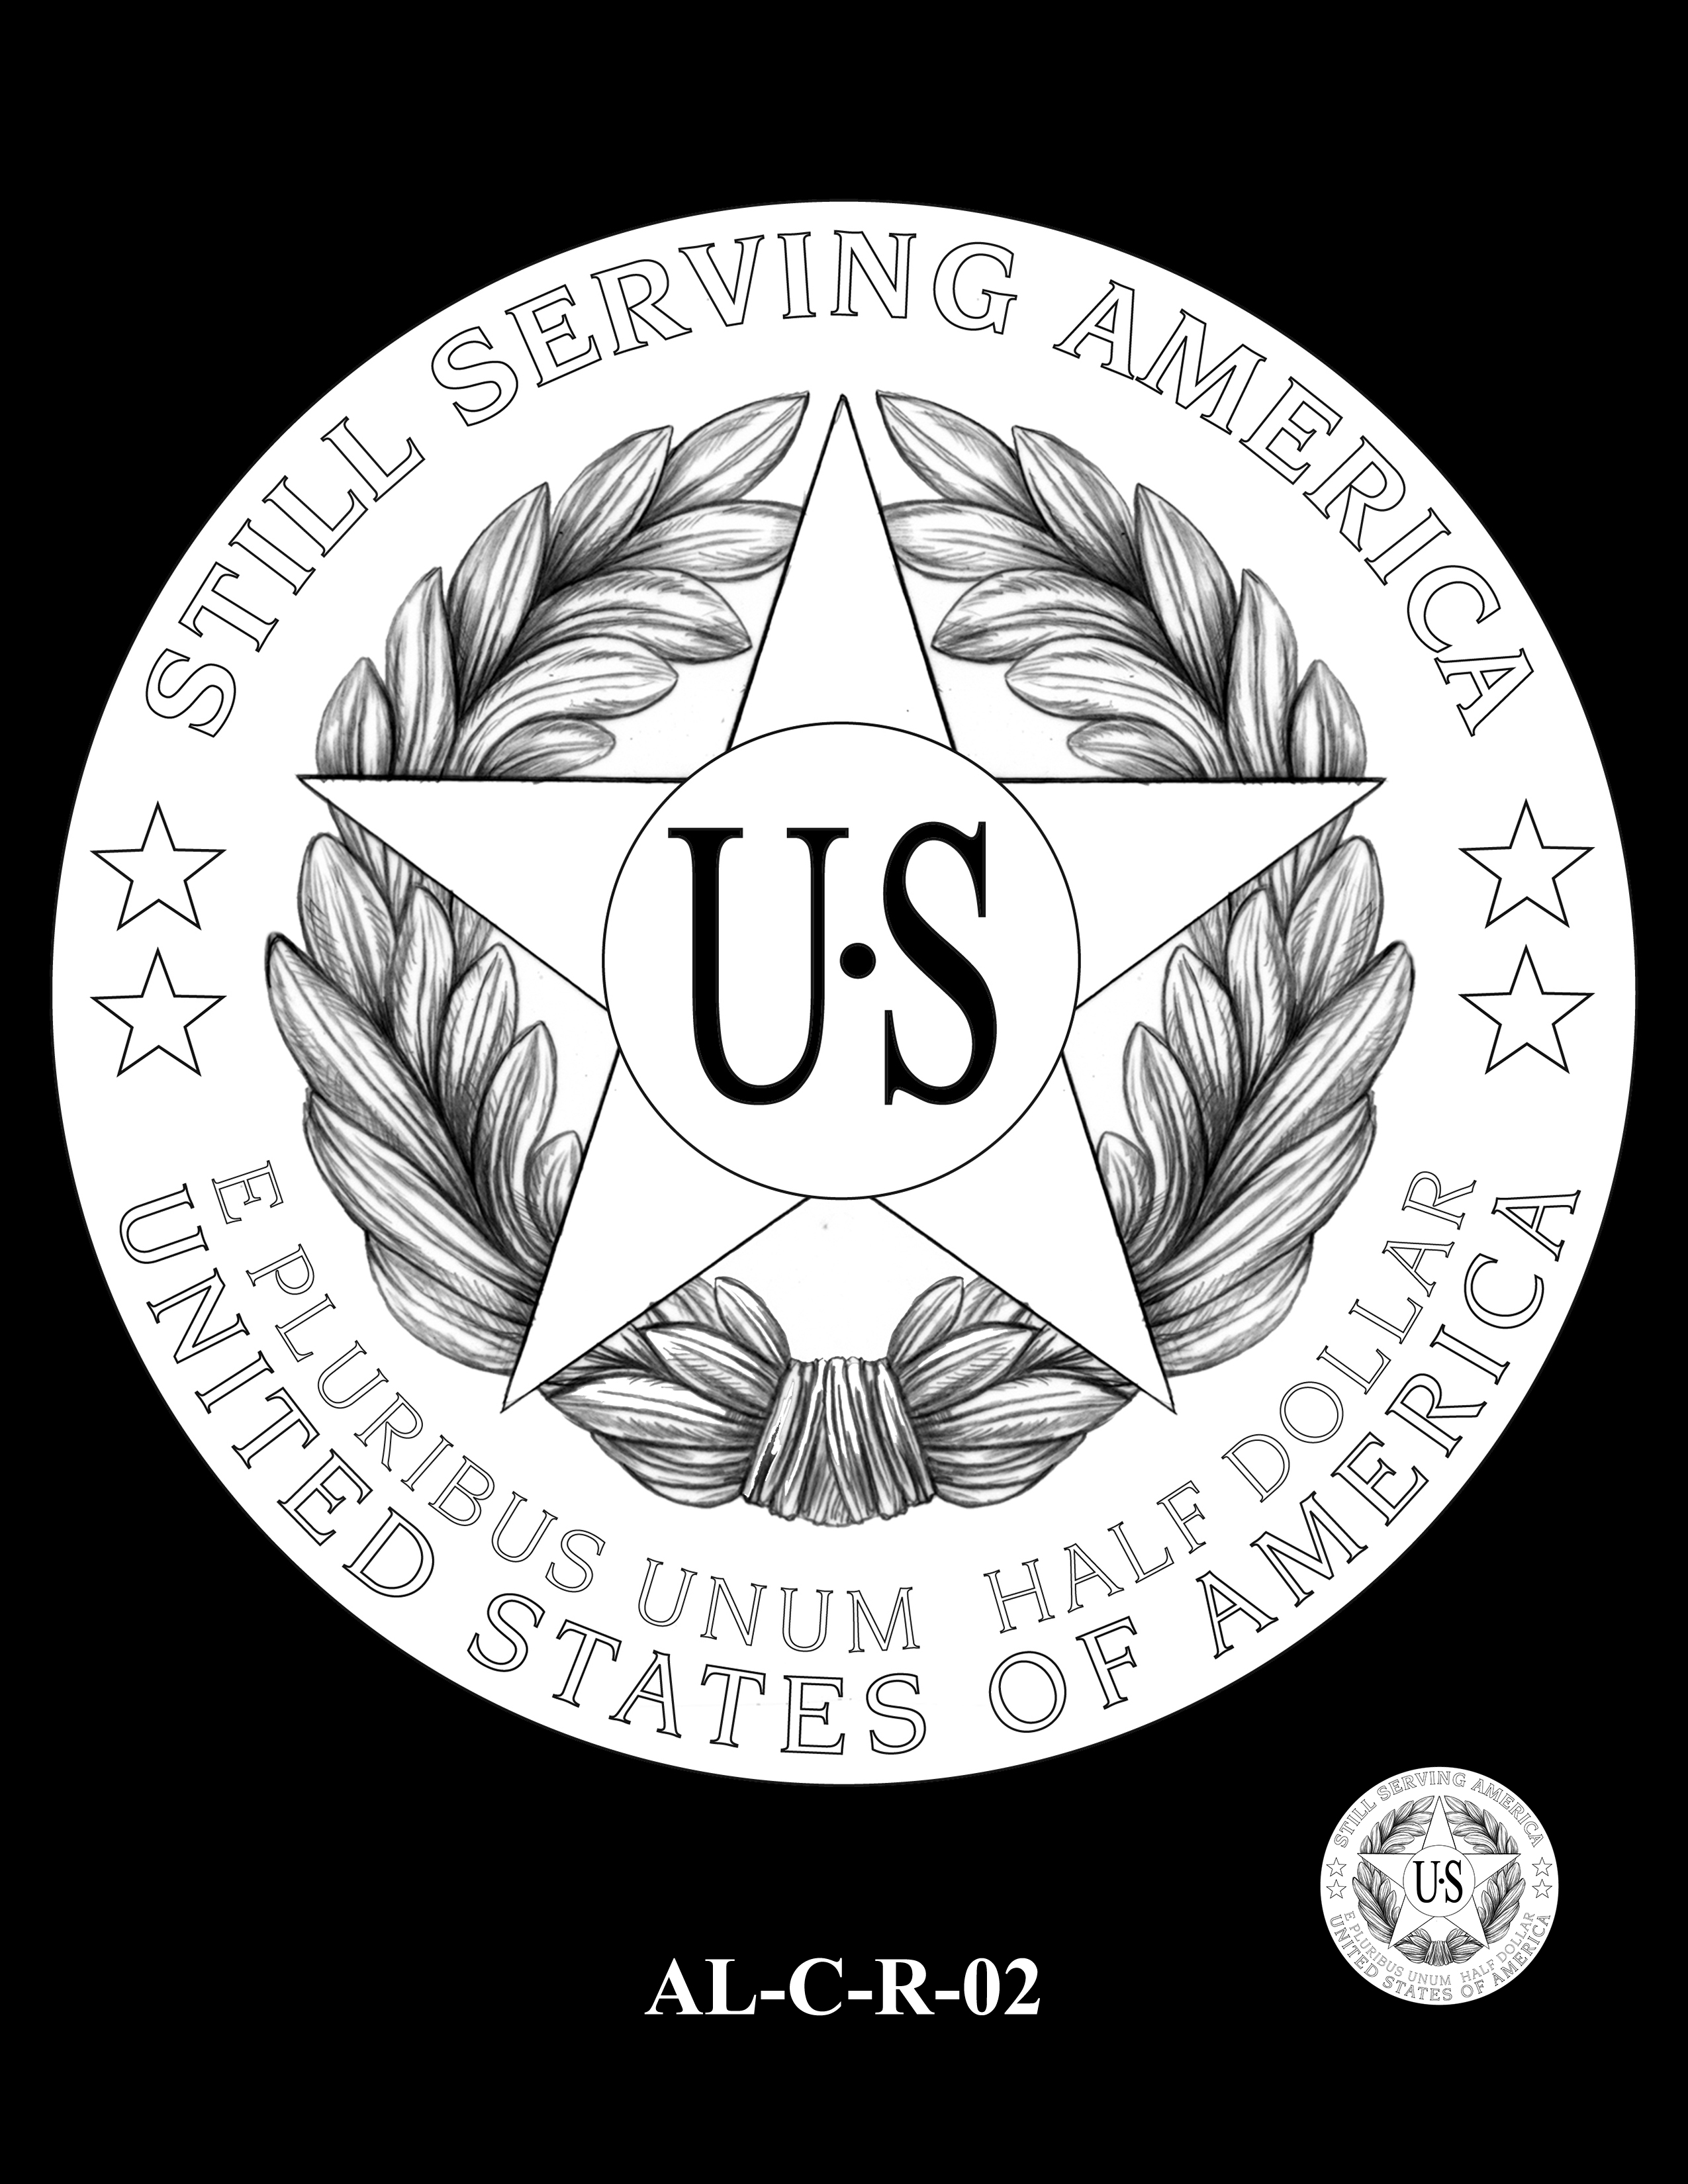 AL-C-R-02 -- 2019 American Legion 100th Anniversary Commemorative Coin Program - Clad Reverse